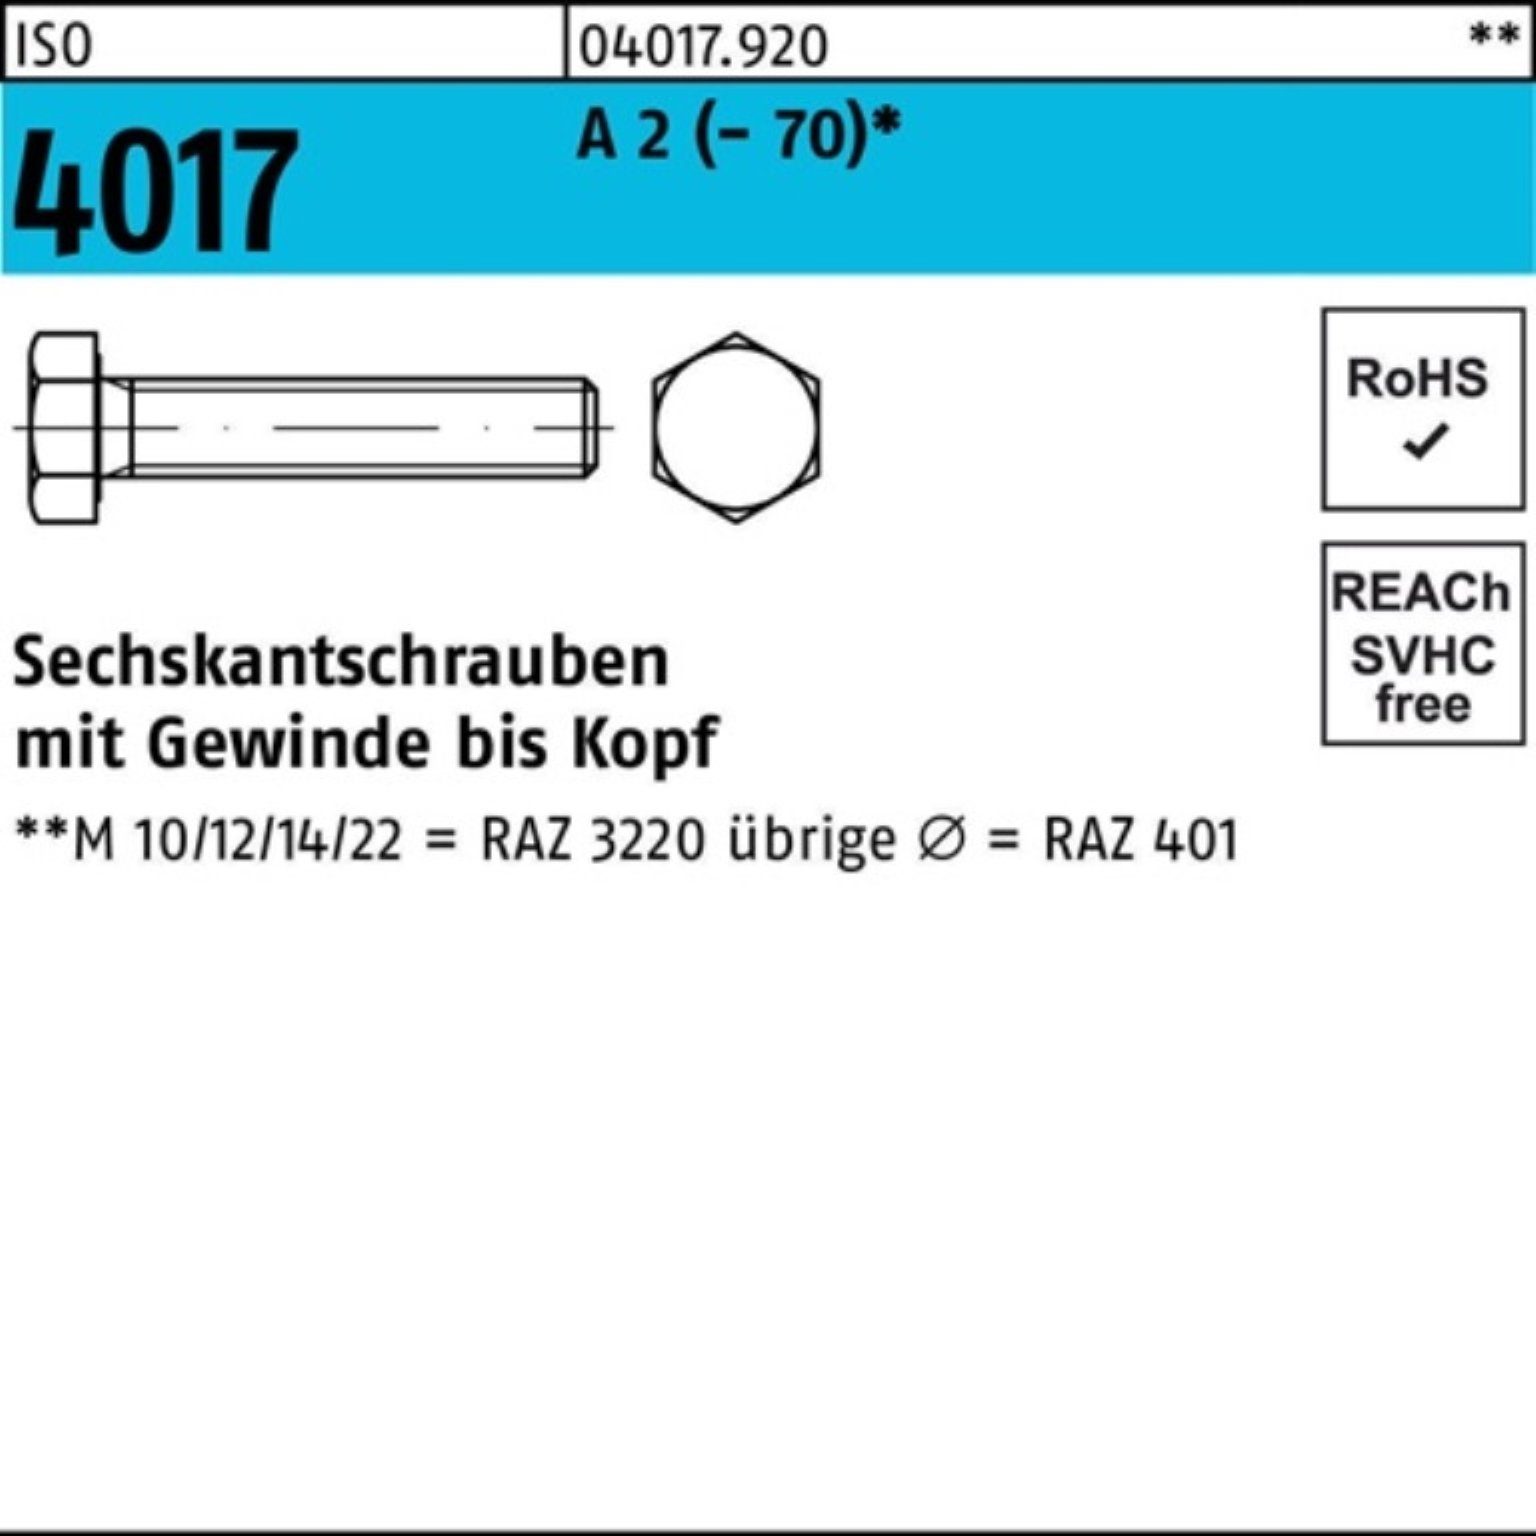 Bufab Sechskantschraube 100er Pack Sechskantschraube ISO 4017 VG M30x 120 A 2 (70) 1 Stück